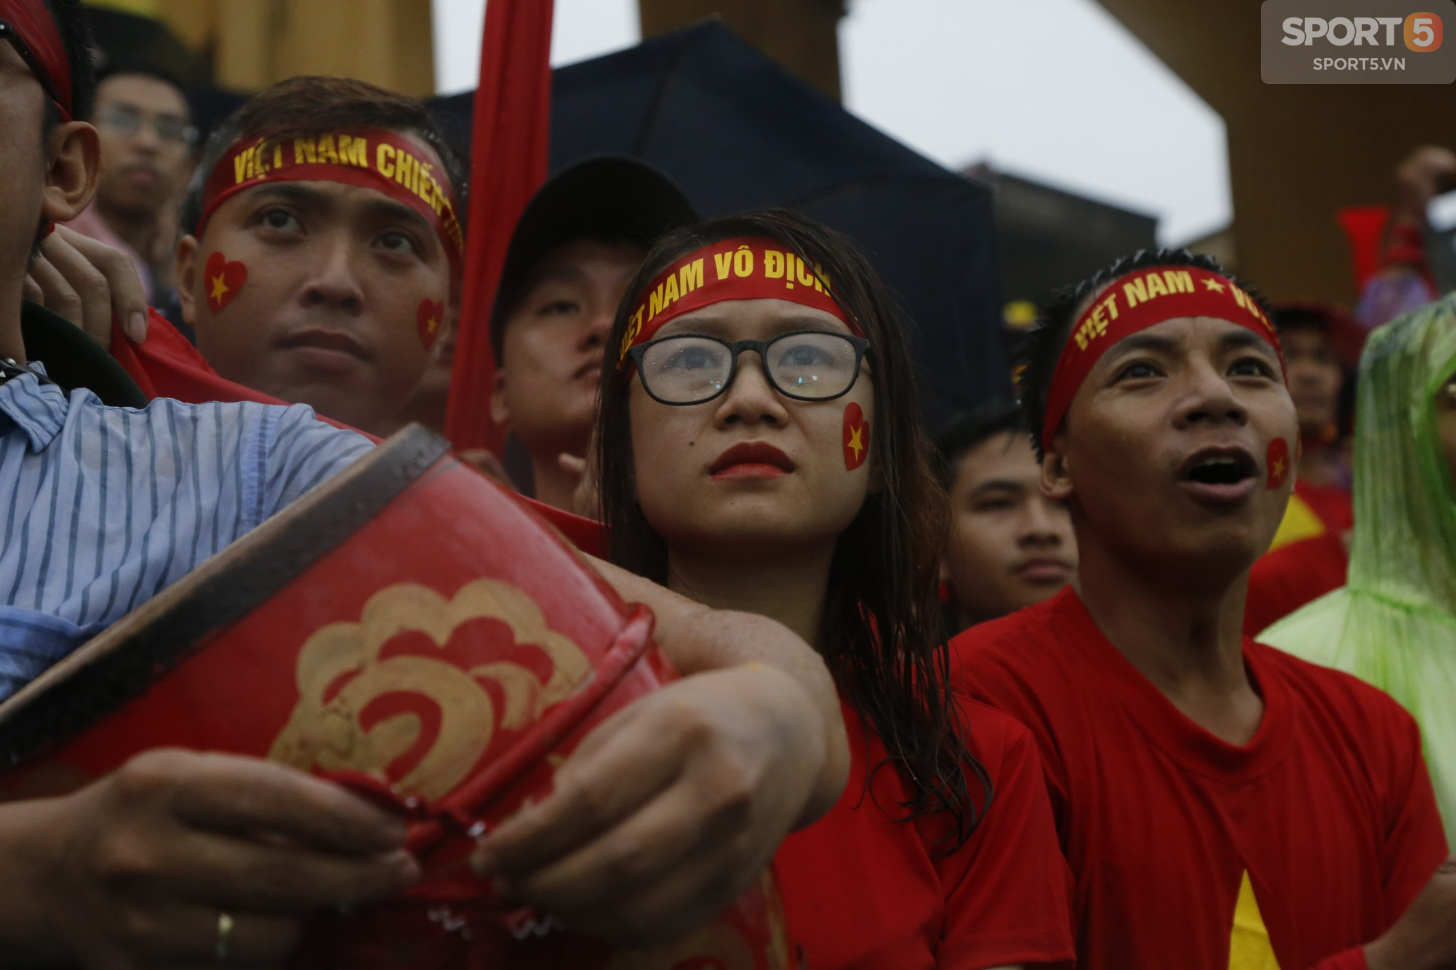 Mặc kệ thắng thua, mưa gió, người hâm mộ vẫn cháy hết mình vì một Olympic Việt Nam bất khuất - Ảnh 12.